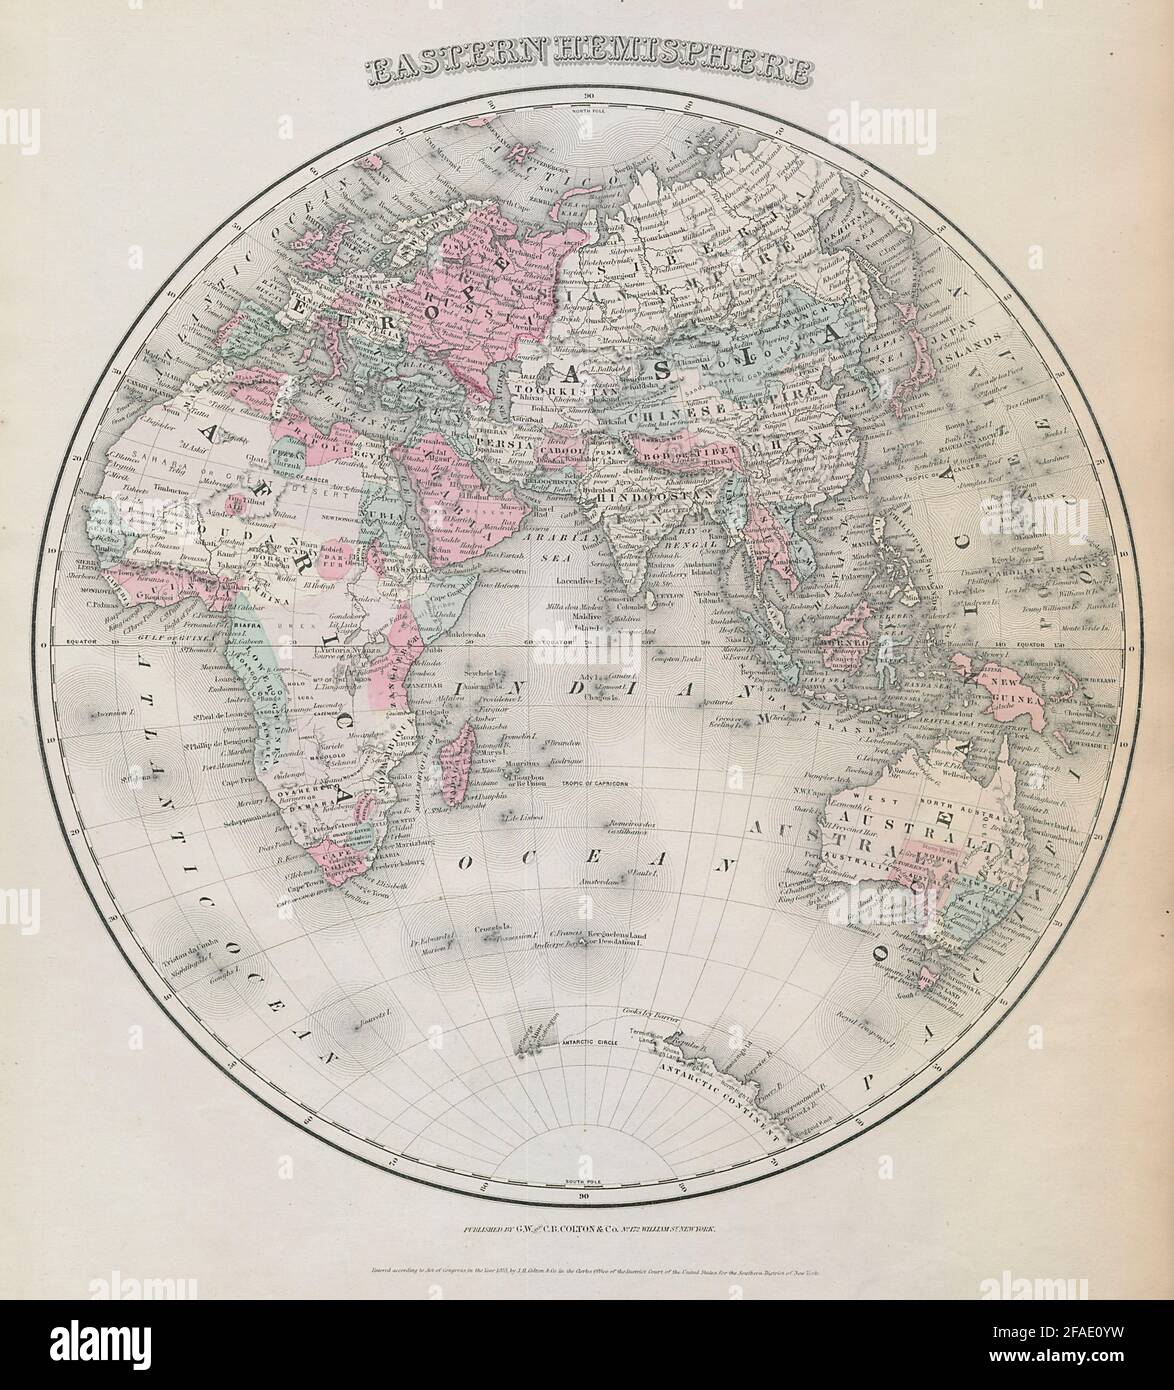 Östliche Hewest- Und Osthalle. Asien Afrika Europa Australasien. Antike Landkarte. COLTON 1869 Stockfoto